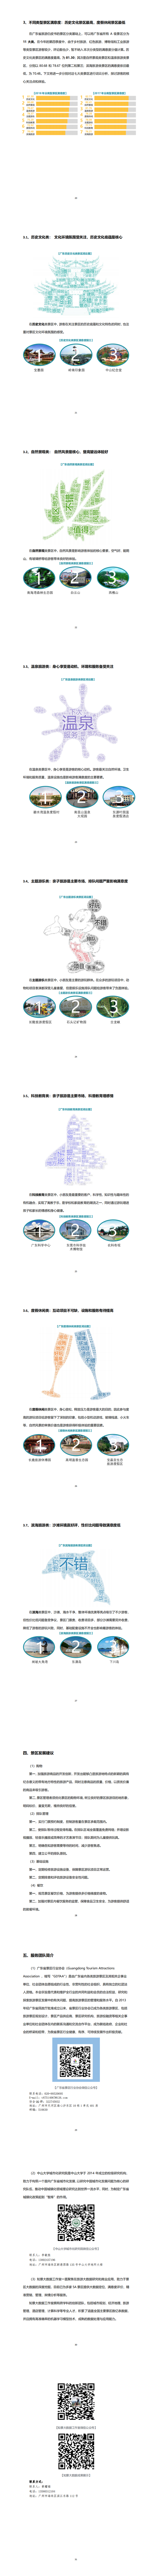 广东省旅游景区游客满意度大数据调查报告-2018年第四季度20190224_1